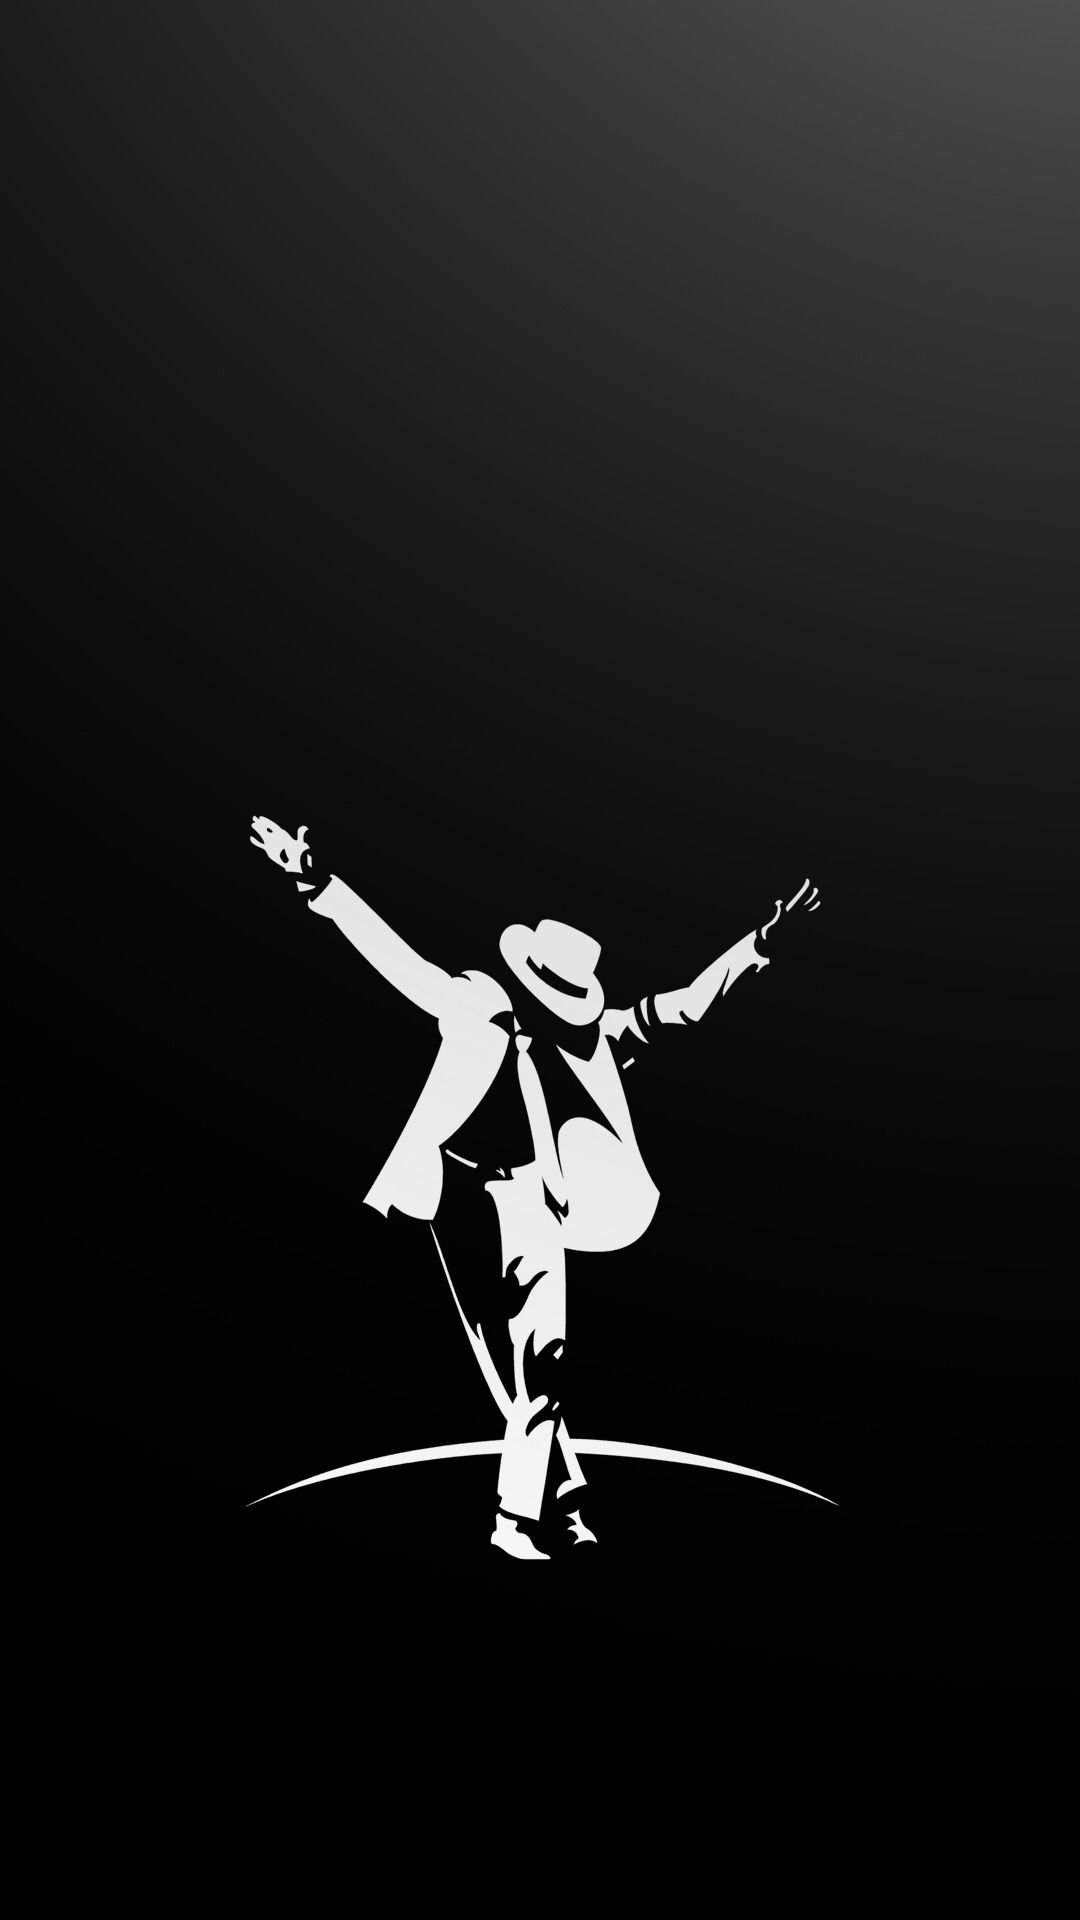 Michael Jackson Dancing Art iPhone Wallpaper